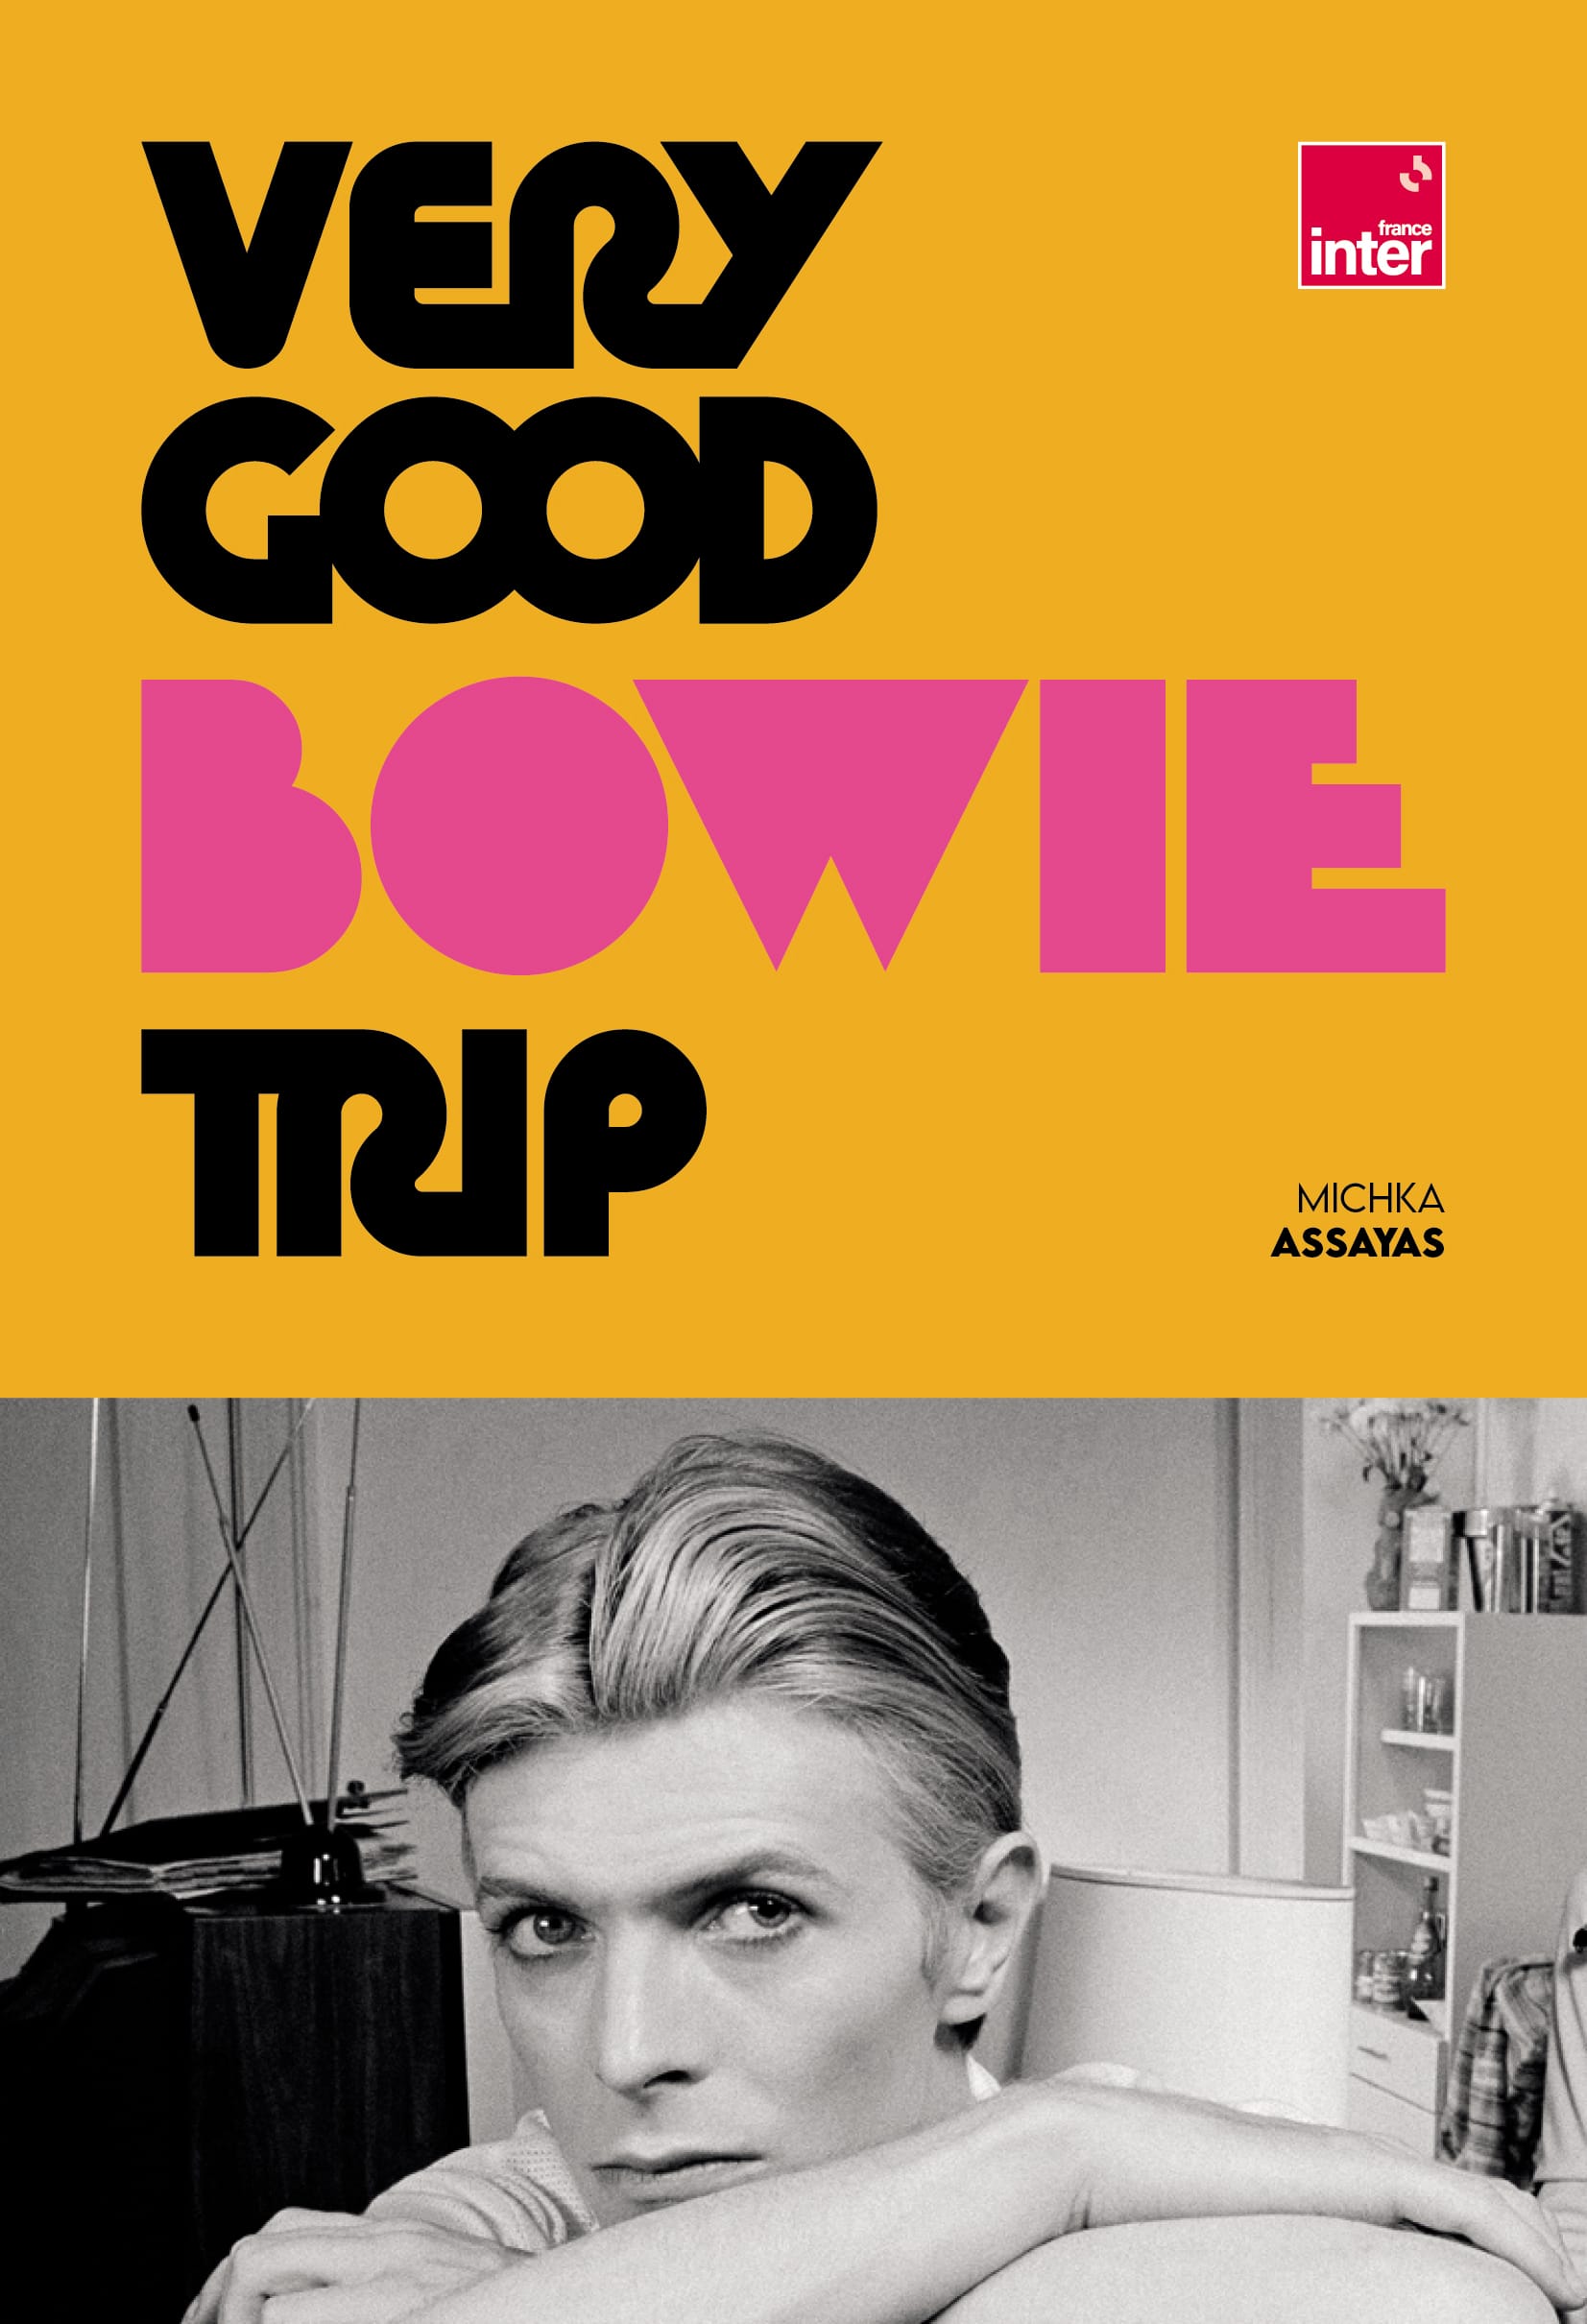 Very Good Bowie Trip - Michka Assayas